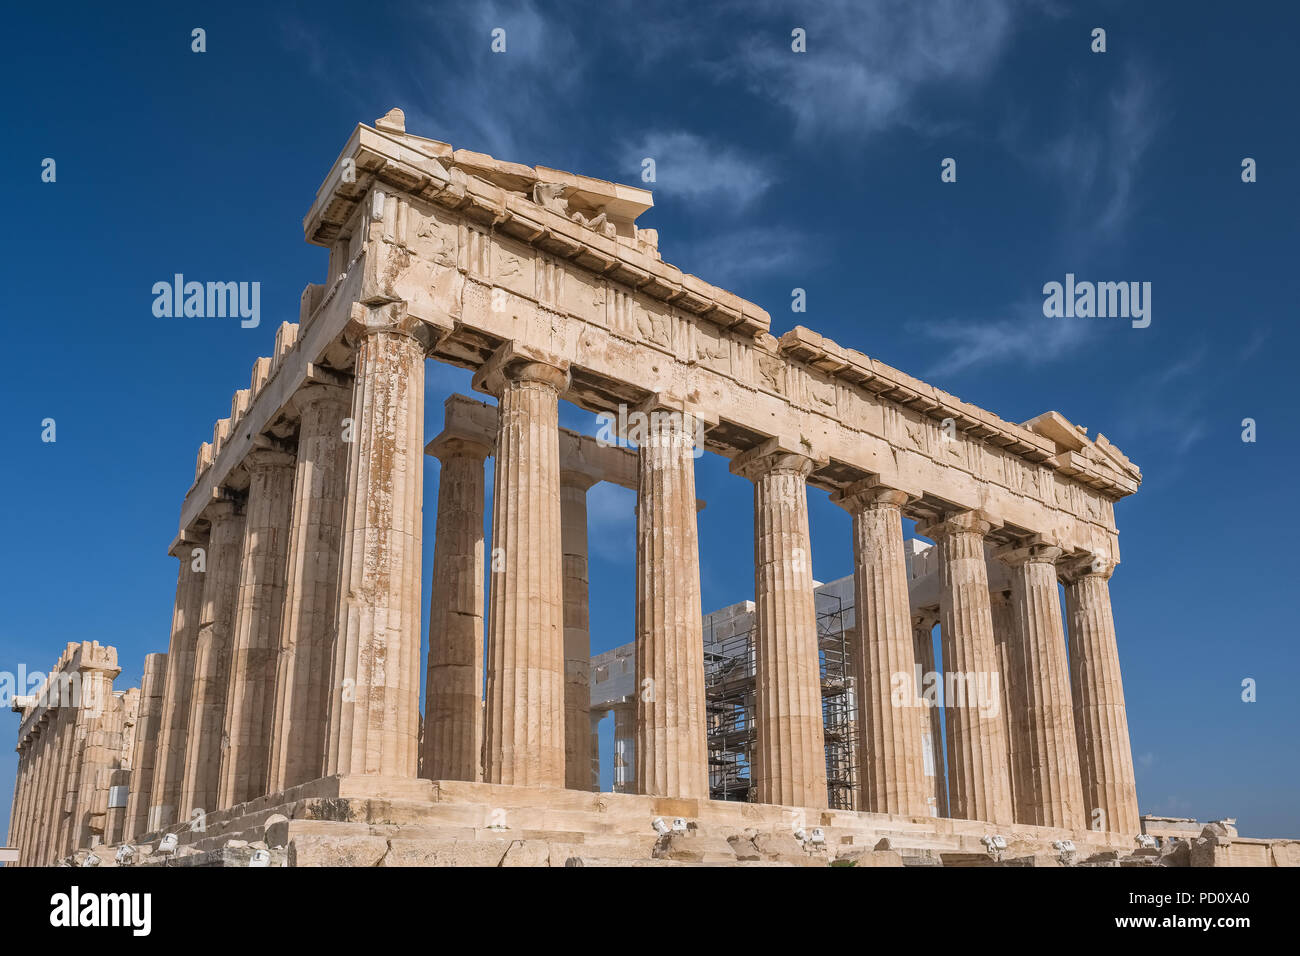 Columns of Parthenon temple in Acropolis, Athens. Stock Photo